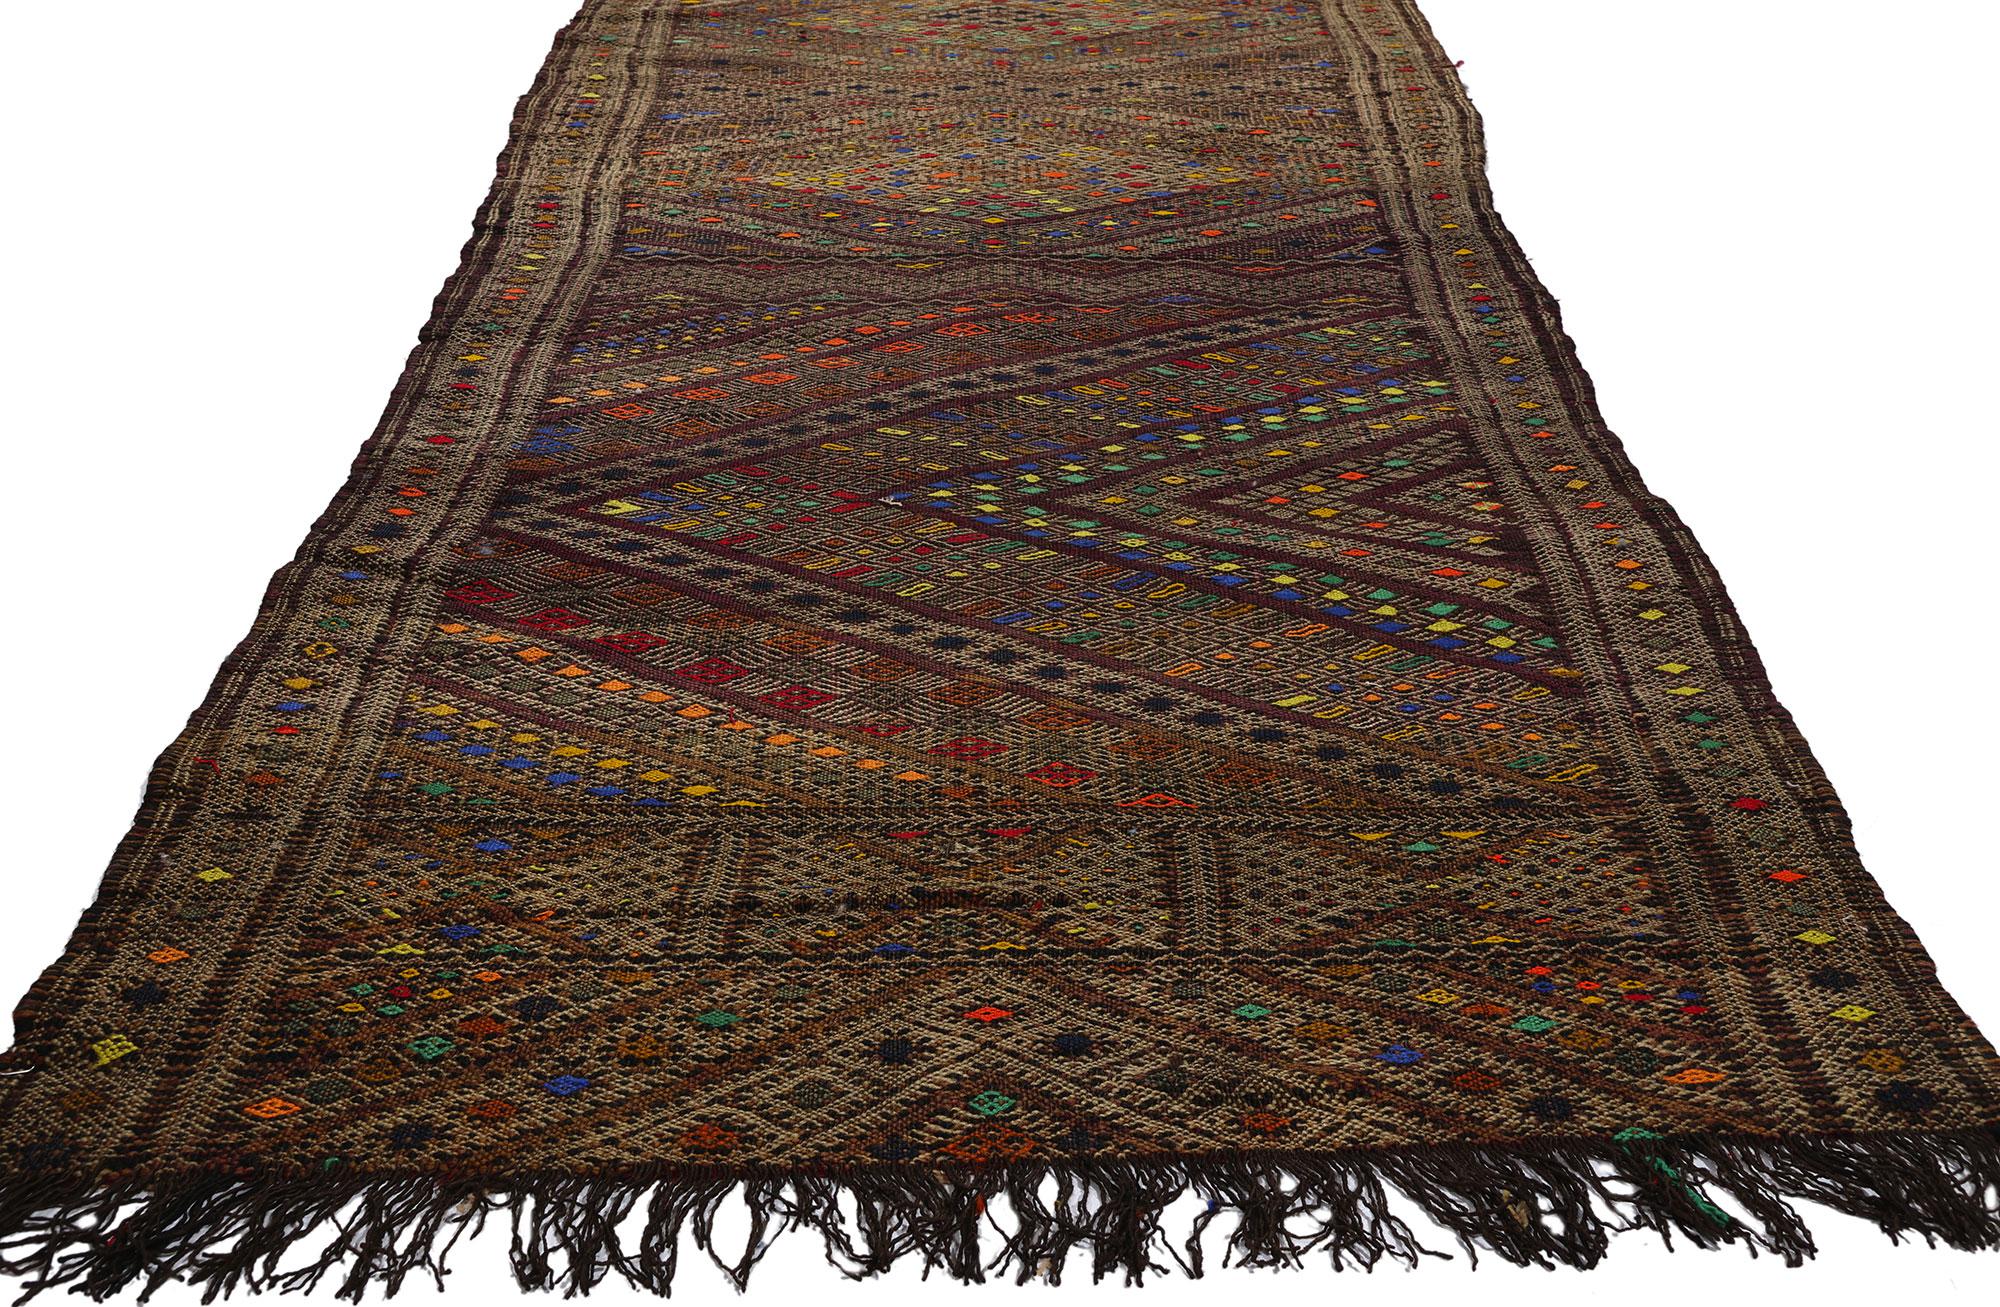 21845 Tapis marocain Vintage Zemmour, 03'01 x 16'05. Voici un ravissant tapis marocain en kilim, délicieusement tissé à la main par les artisans qualifiés de la tribu Zemmour, nichée dans les montagnes pittoresques du Moyen Atlas au Maroc. Inspiré